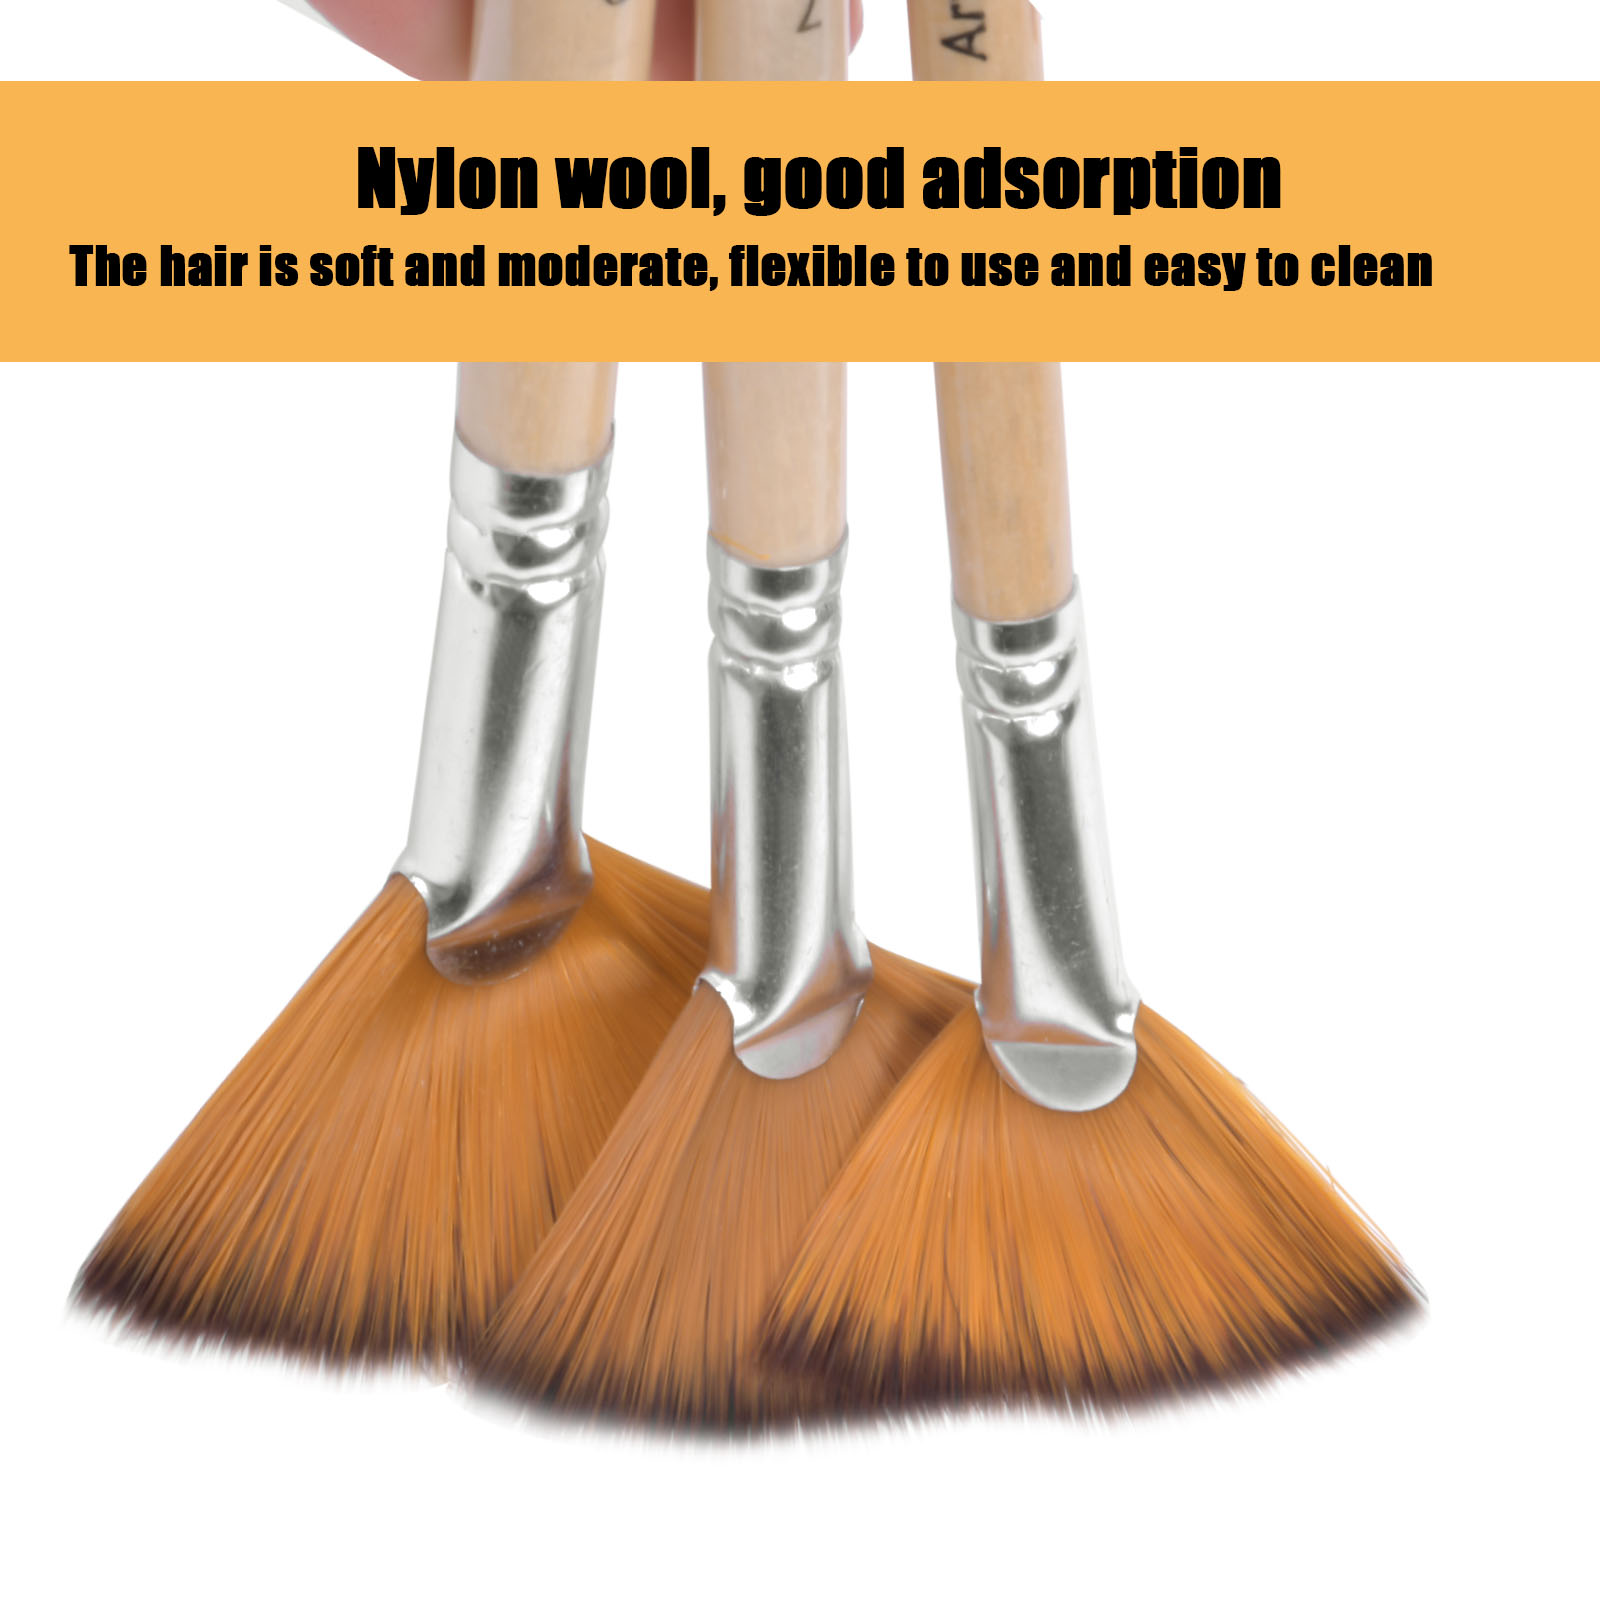 Artist Fan Paint Brushes Set 9Pcs - Soft Anti-Shedding Nylon Hair